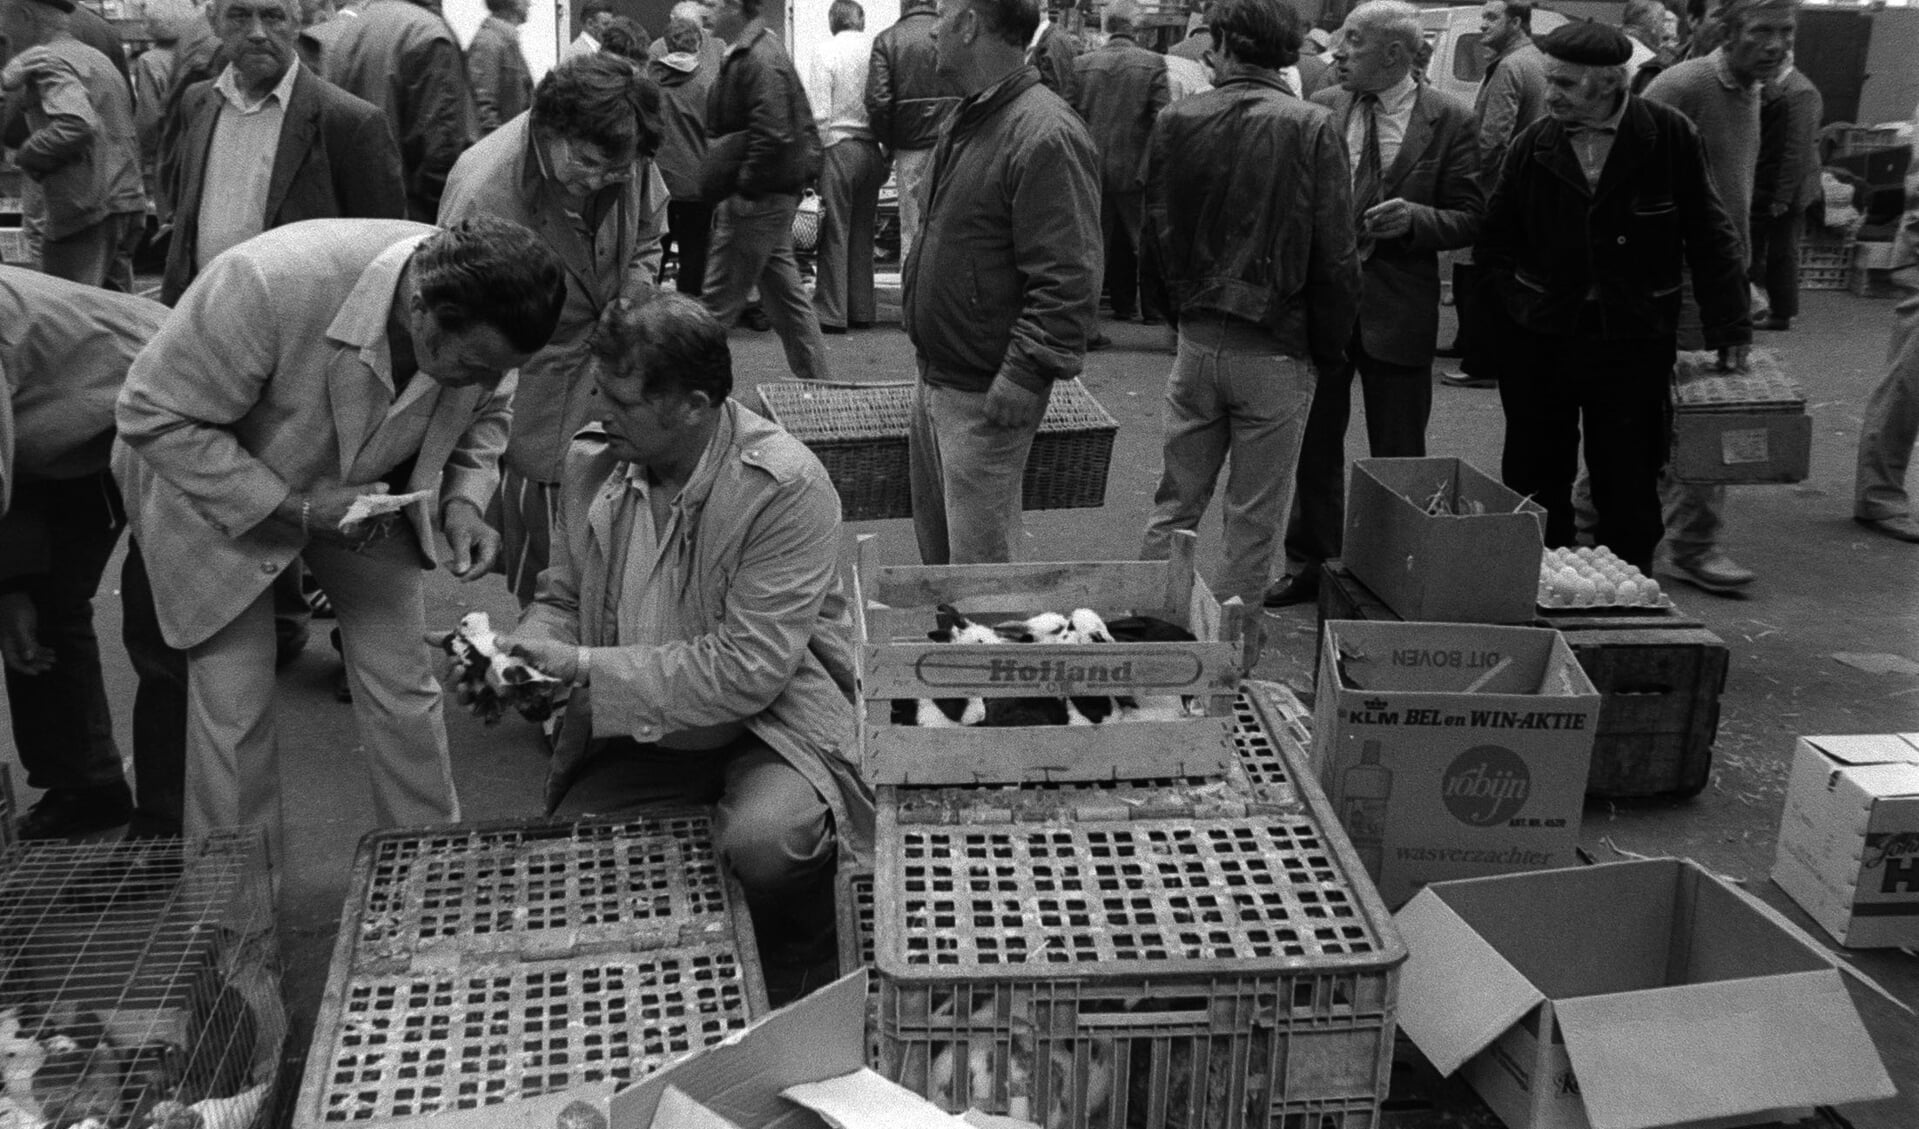 Archieffoto van de Barneveldse Kleindierenmarkt uit 1985.